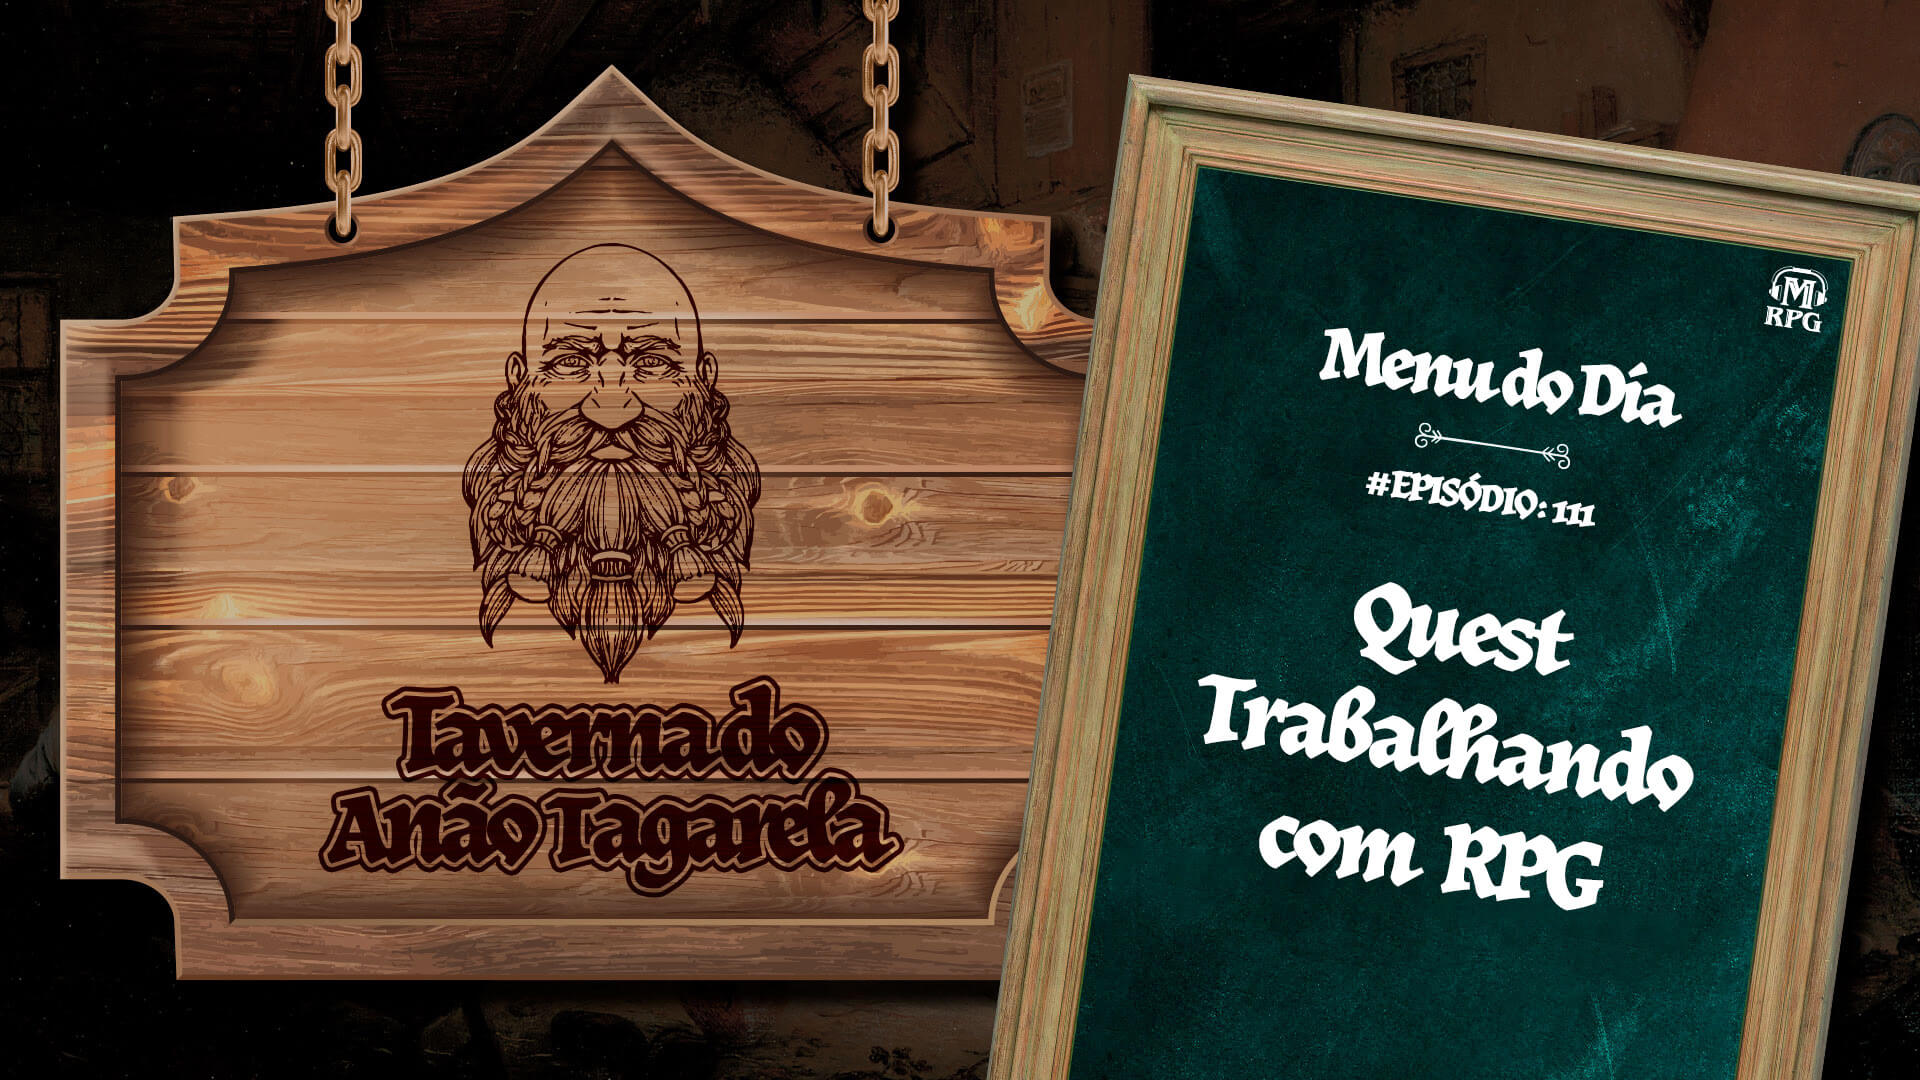 Quest：Trabalhando com RPG – Taverna do Anão Tagarela #111